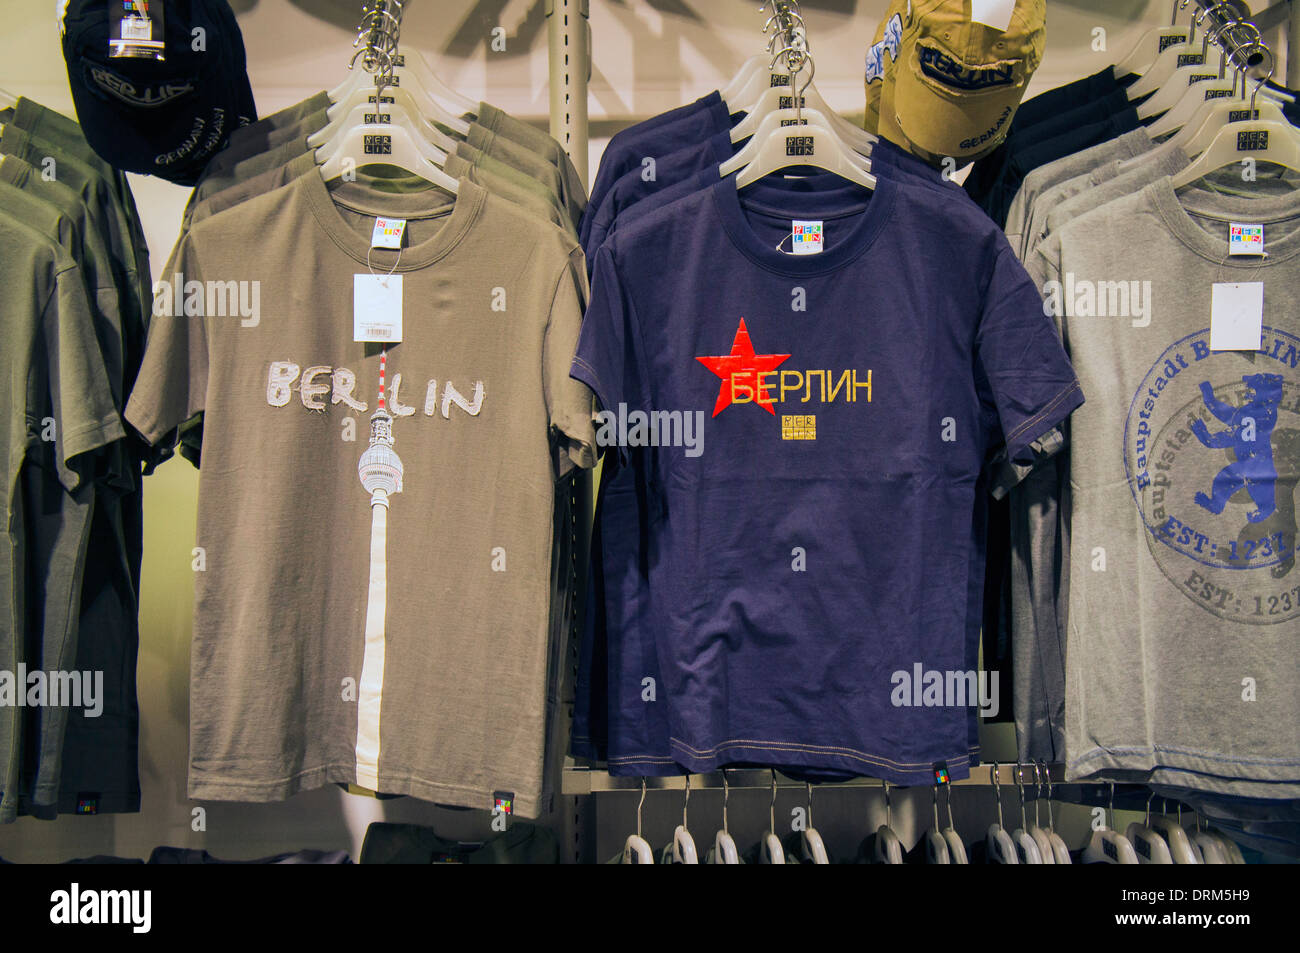 souvenir, gift shop, T shirt Berlin, Russian alphabet Stock Photo